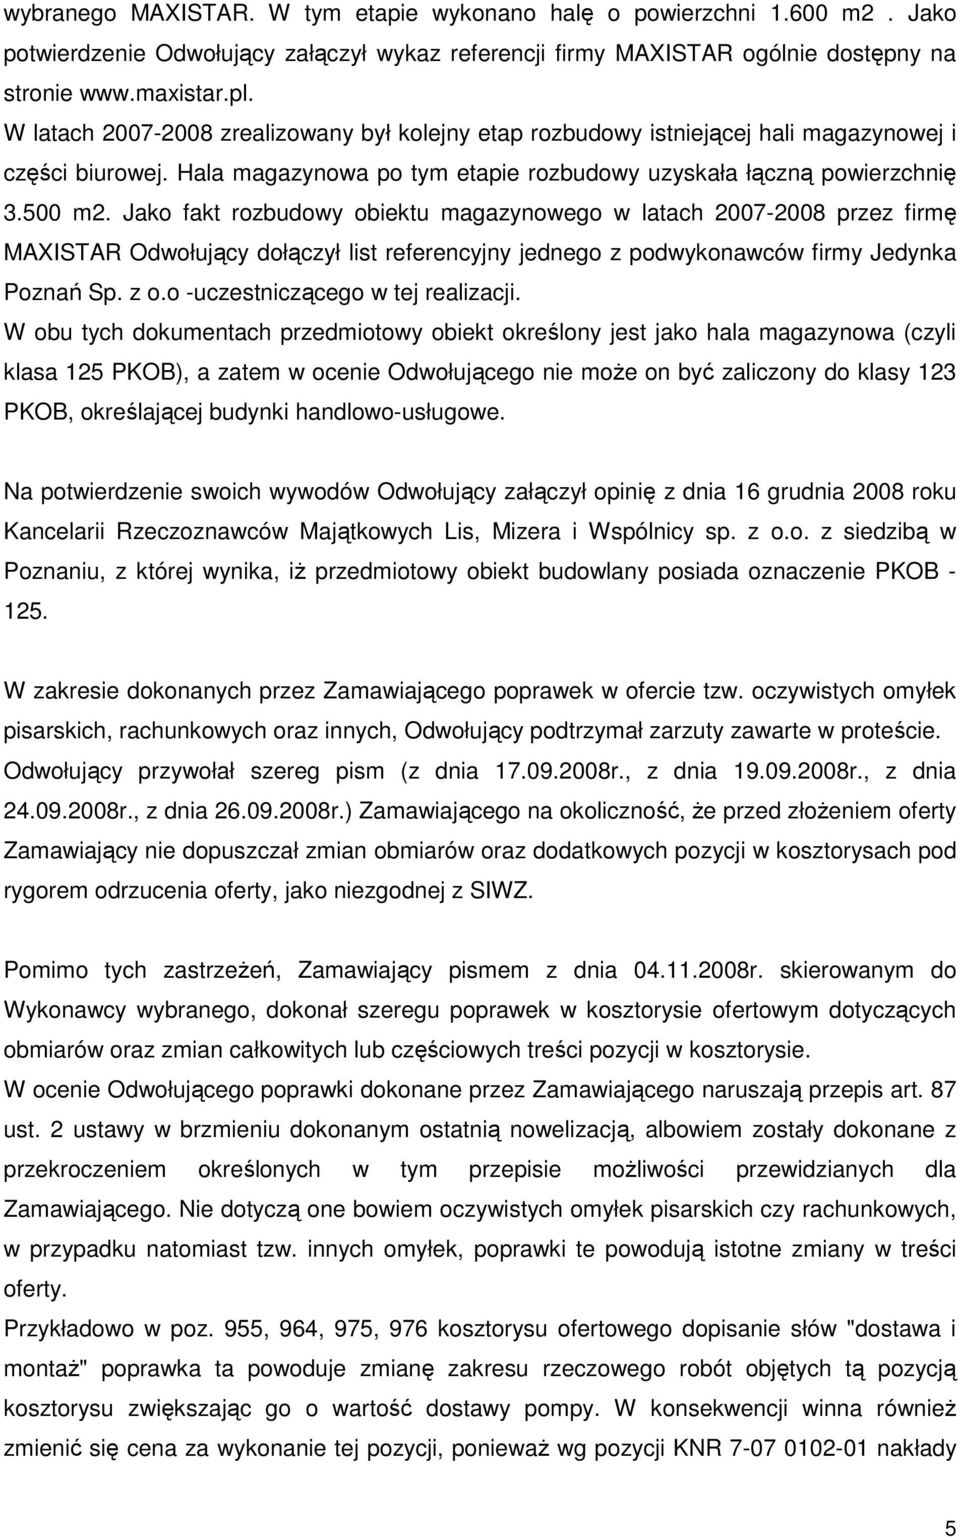 Jako fakt rozbudowy obiektu magazynowego w latach 2007-2008 przez firmę MAXISTAR Odwołujący dołączył list referencyjny jednego z podwykonawców firmy Jedynka Poznań Sp. z o.